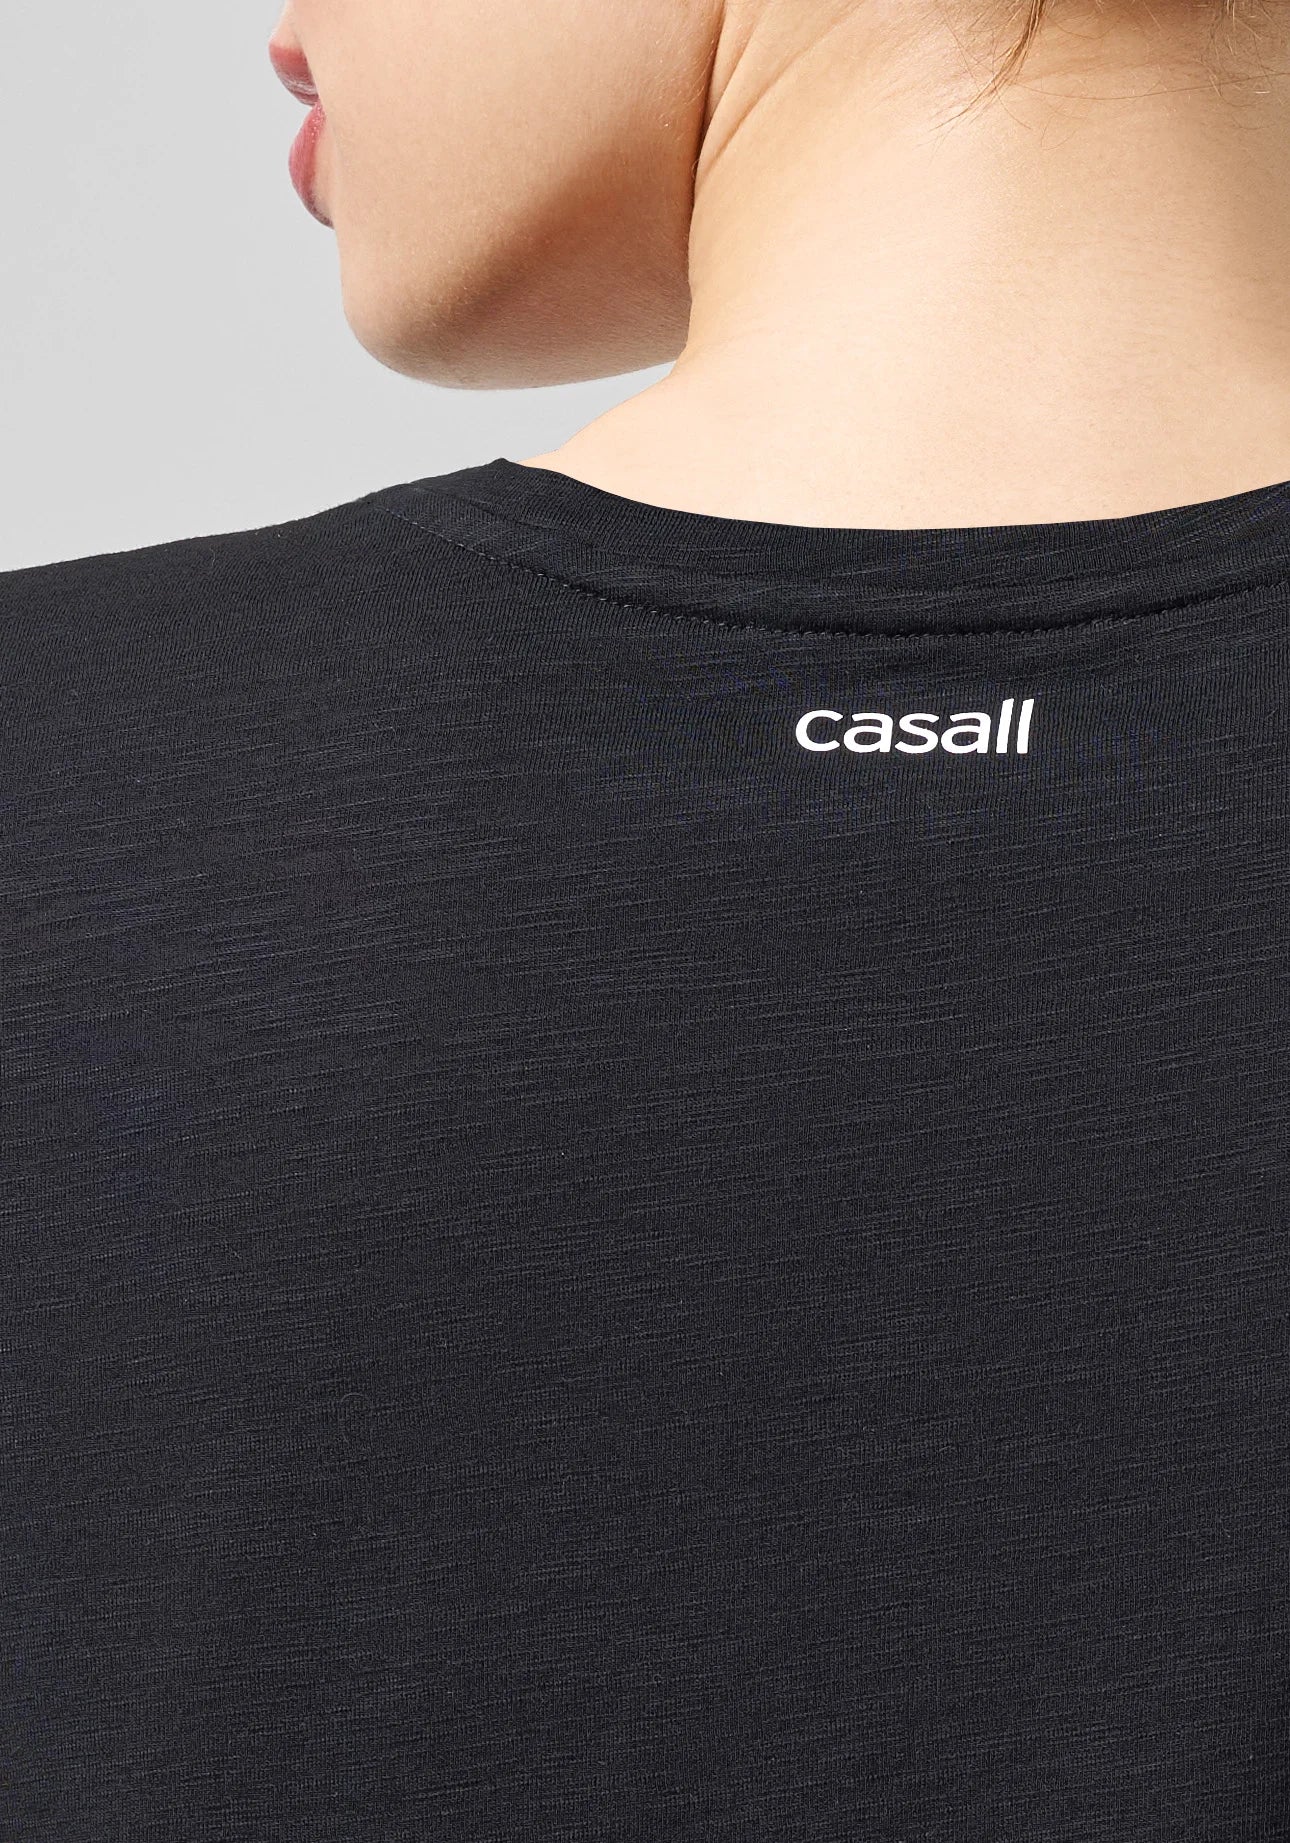 Casall - Soft Texture Tee - Black (D)